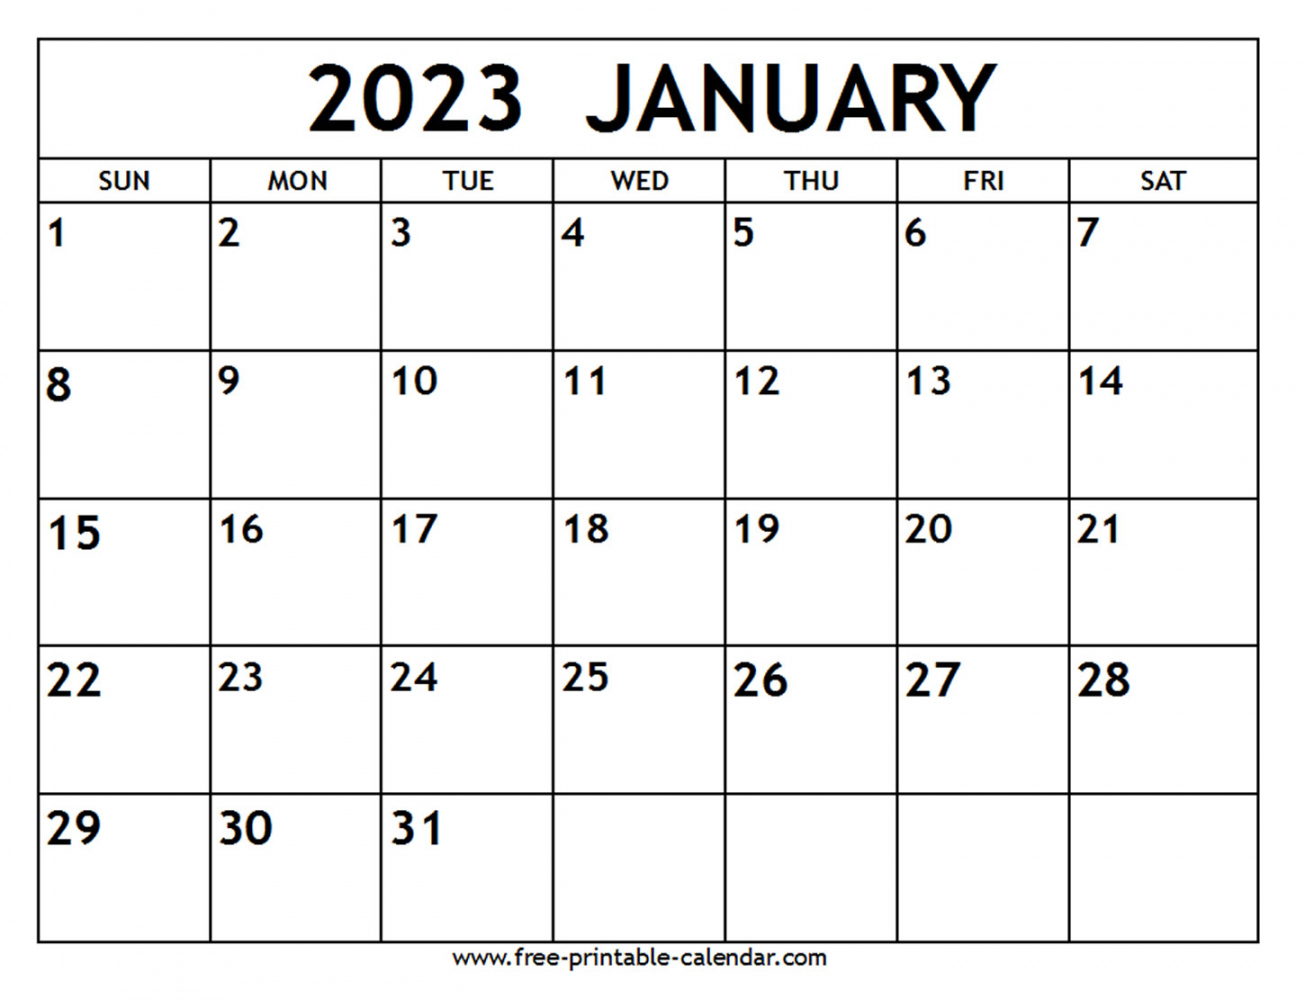 Free Printable January Calendar 2023 - Printable - January  Calendar - Free-printable-calendar